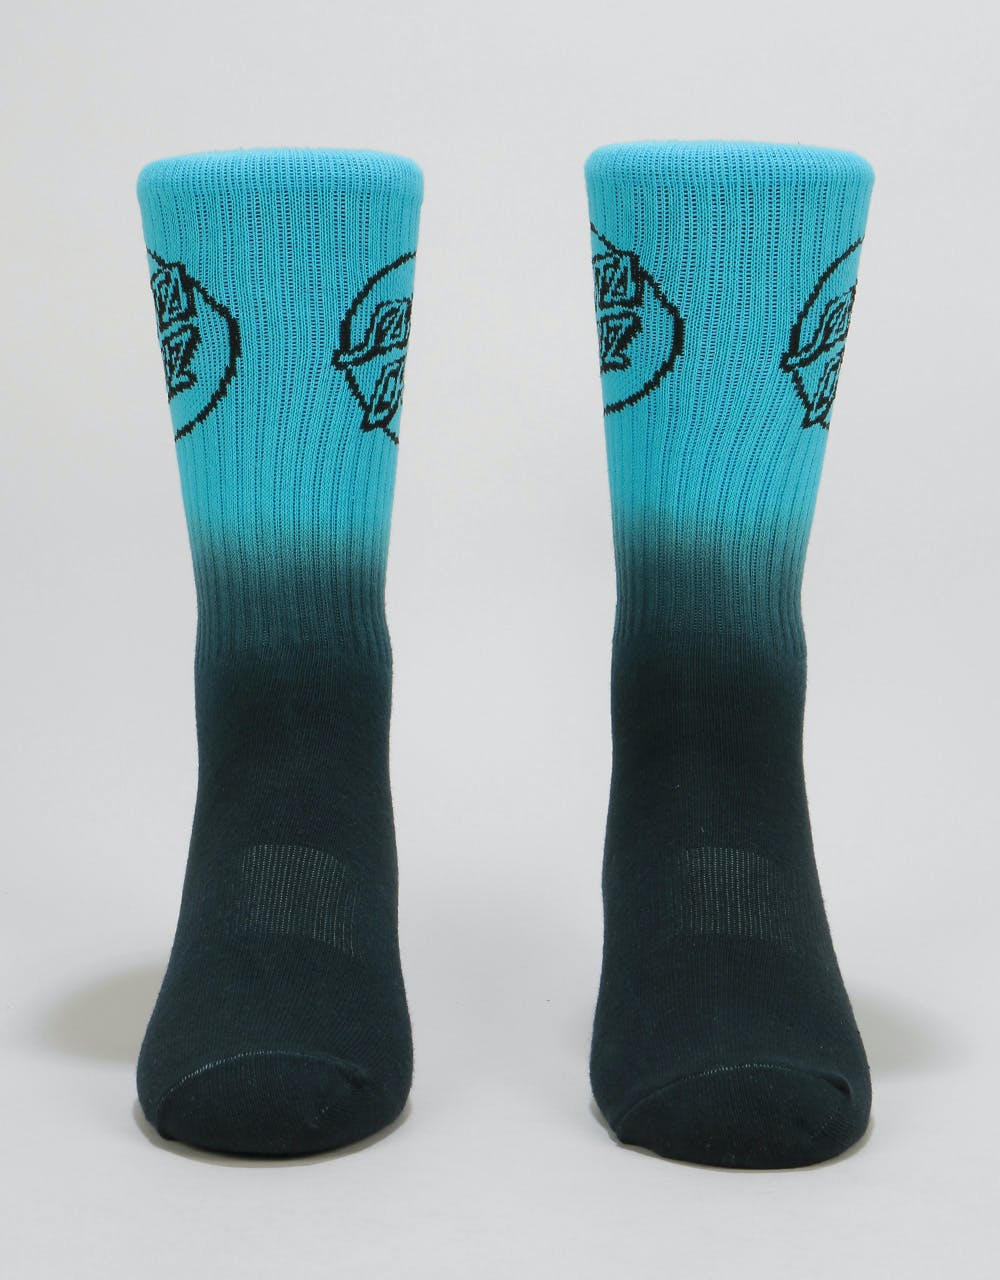 Santa Cruz Opus Fade Socks - Black Fade